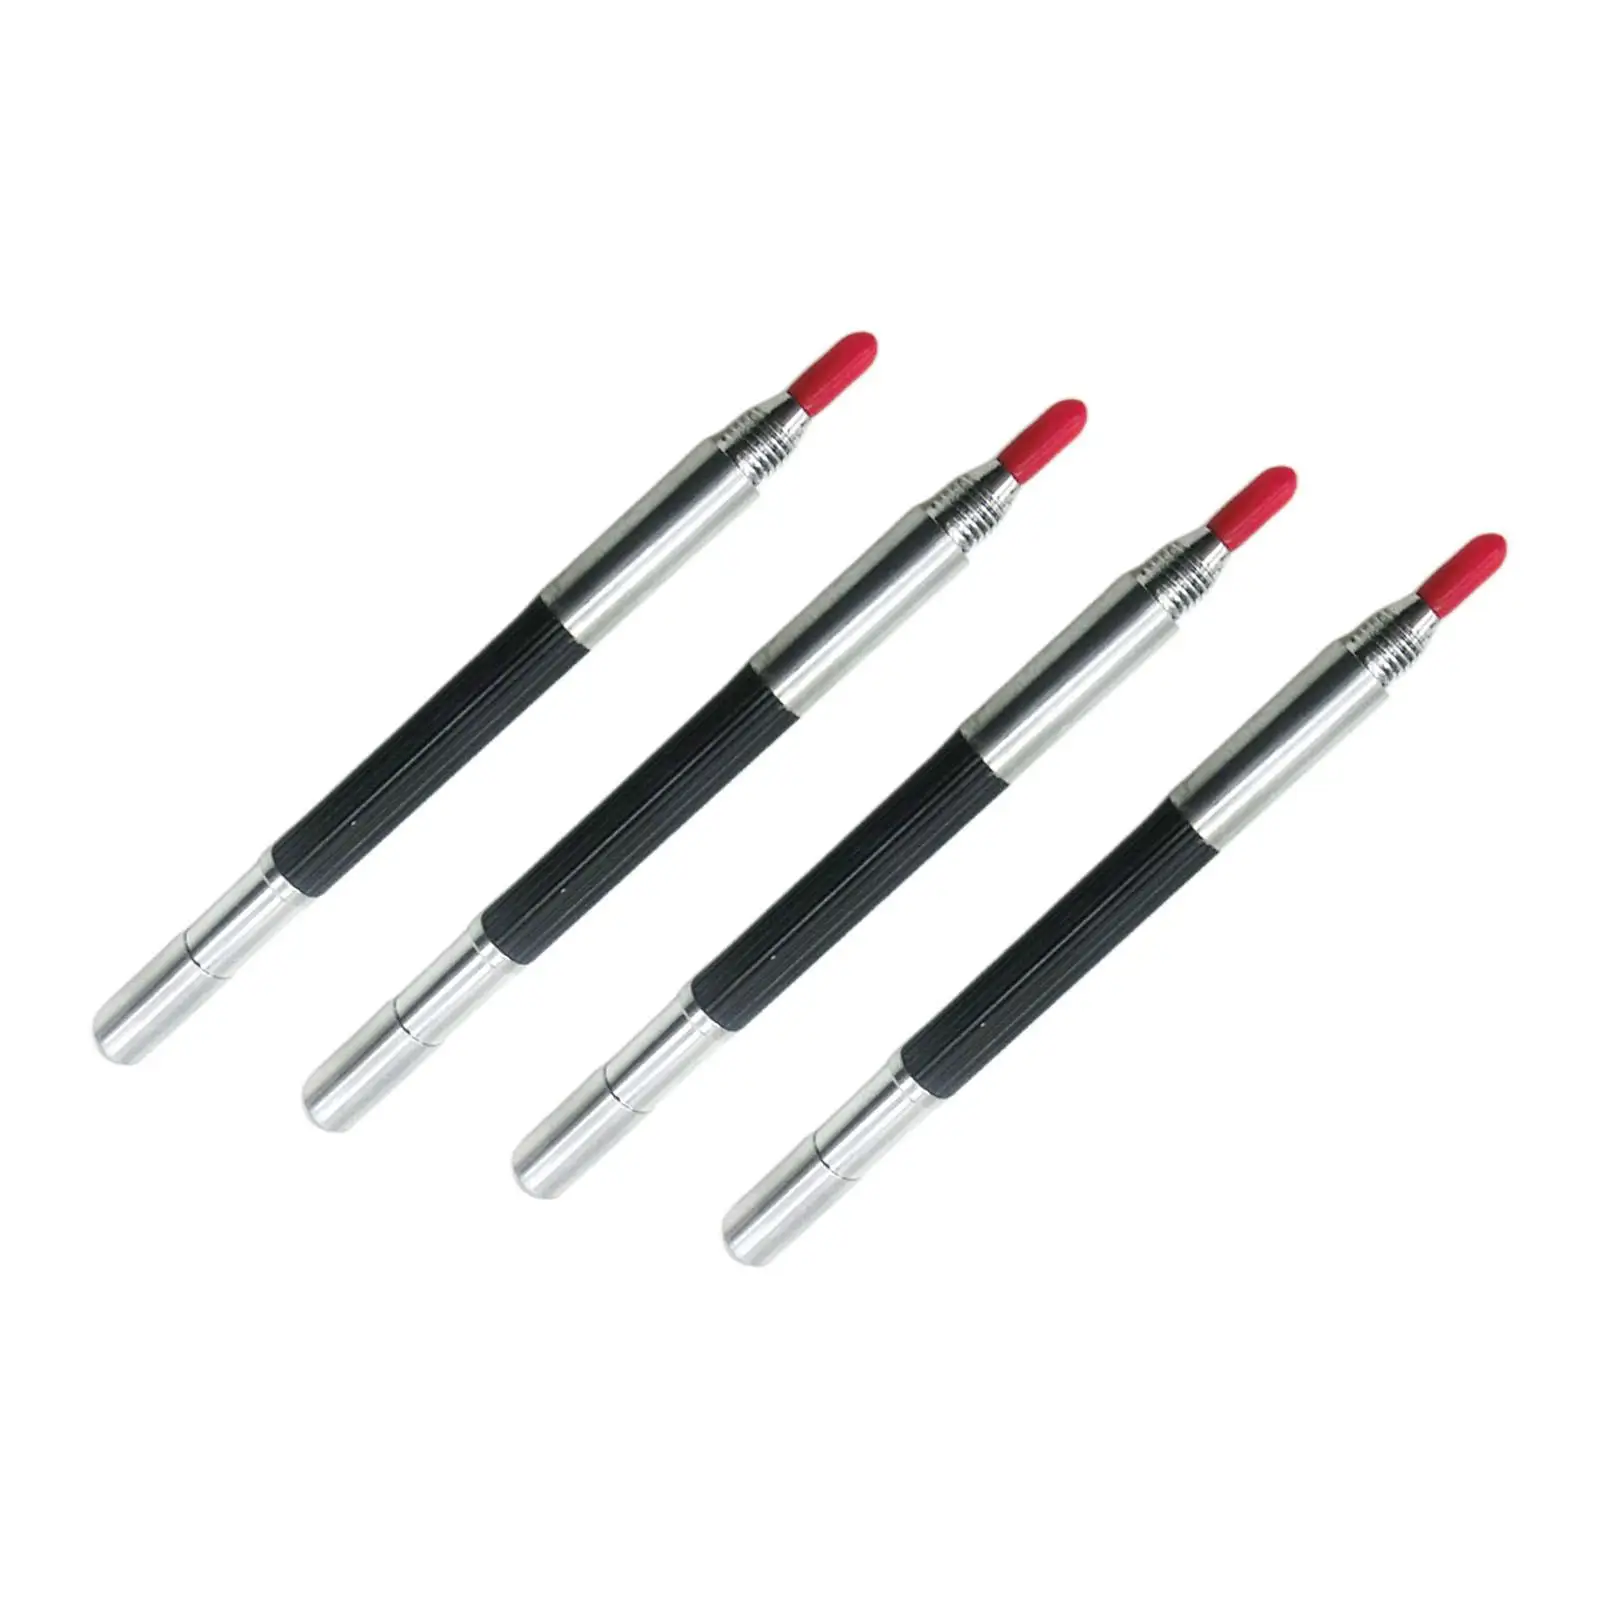 4x Tungsten Carbide Scribing Pen Double Head Long Head Engraving Marking Pen for Glass